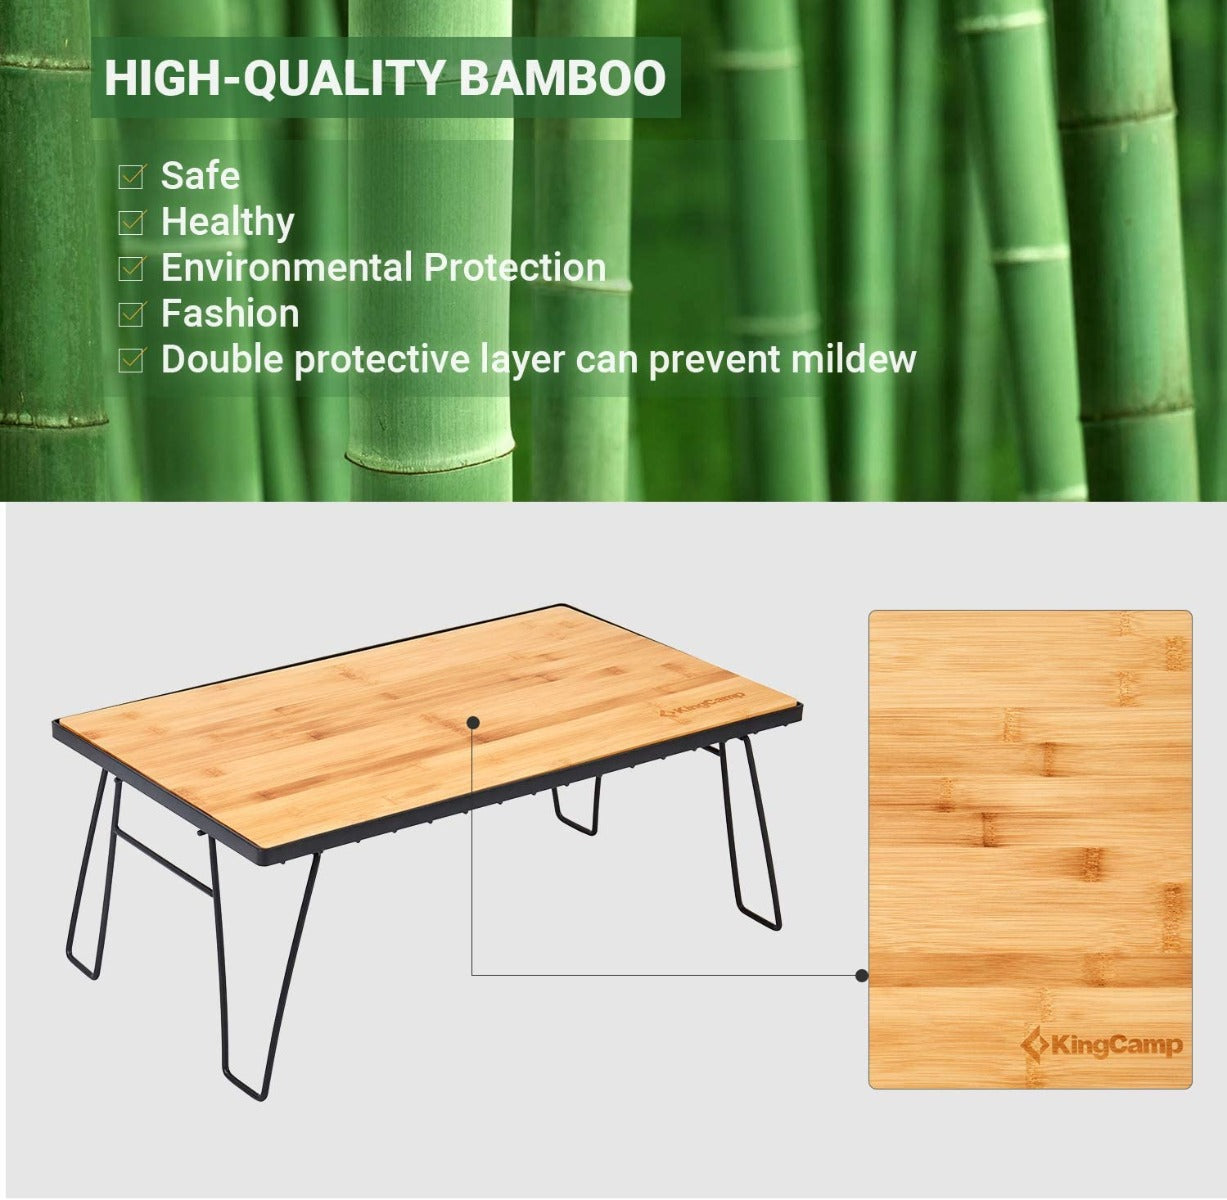 KingCamp Environmental Bamboo Table